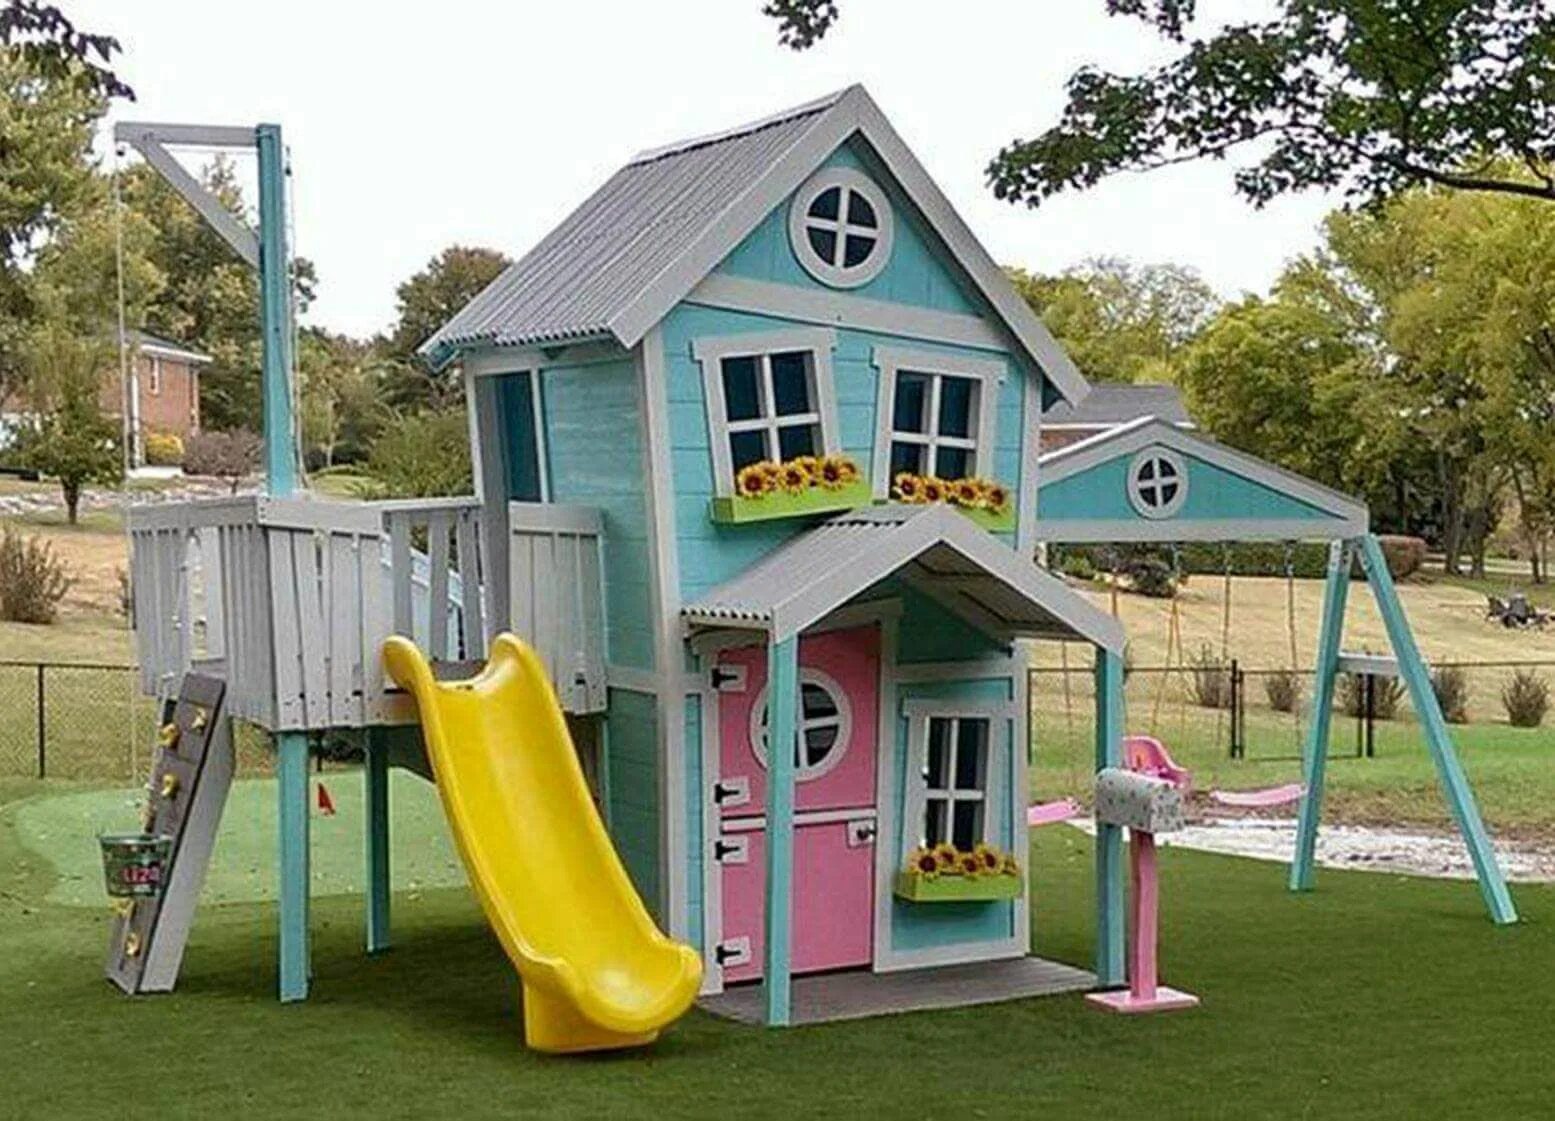 Player housing. Домик для детей. Домик во дворе для детей. Детская площадка с домиком. Детские домики для дачи.